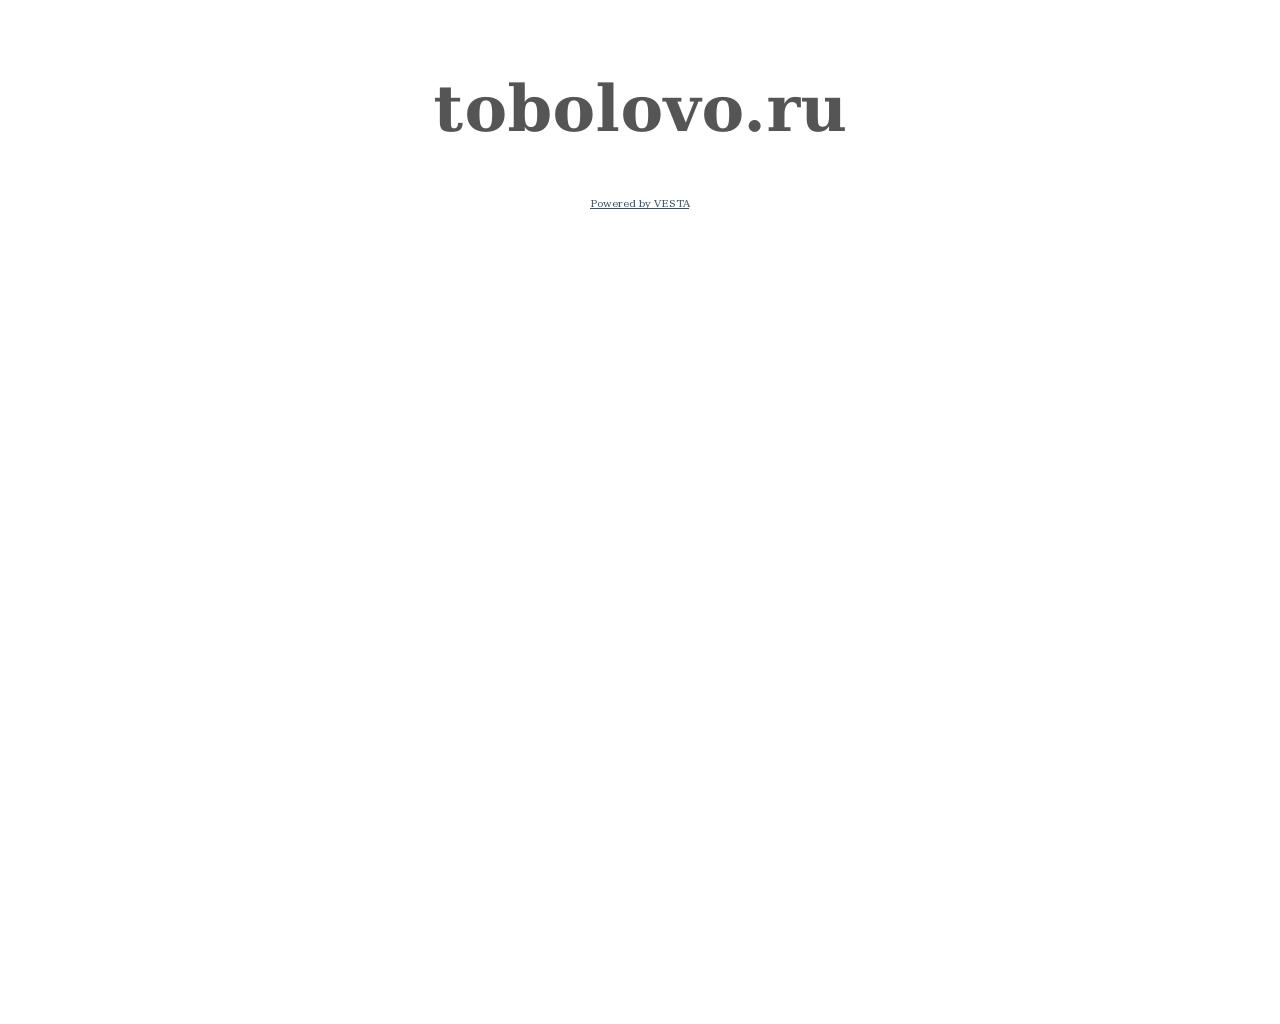 Изображение сайта tobolovo.ru в разрешении 1280x1024